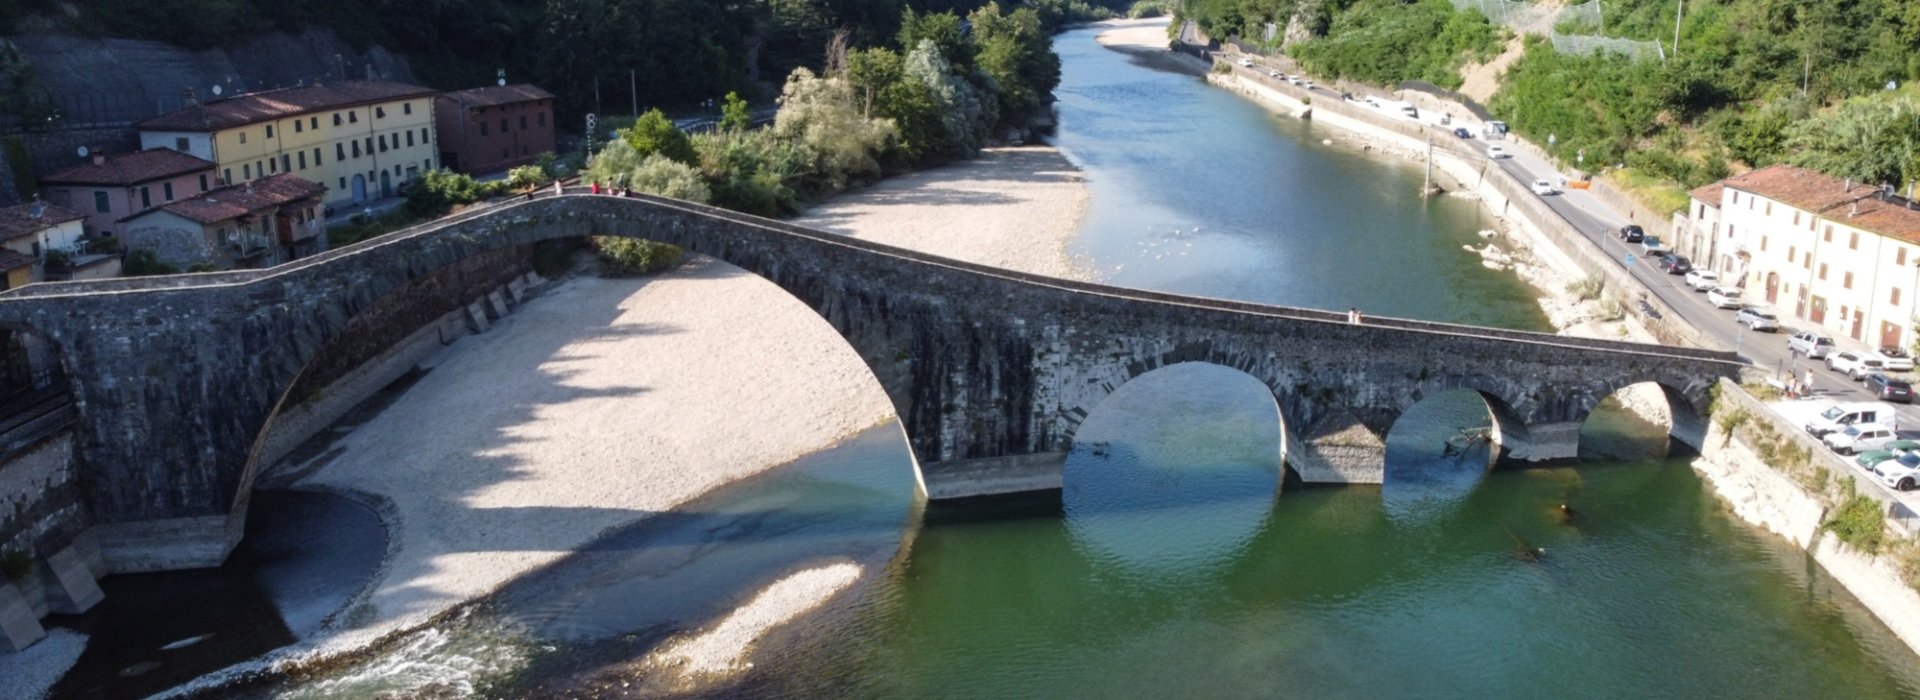 Bike holiday: Ponte della Maddalena Borgo a mozzano, Lucca